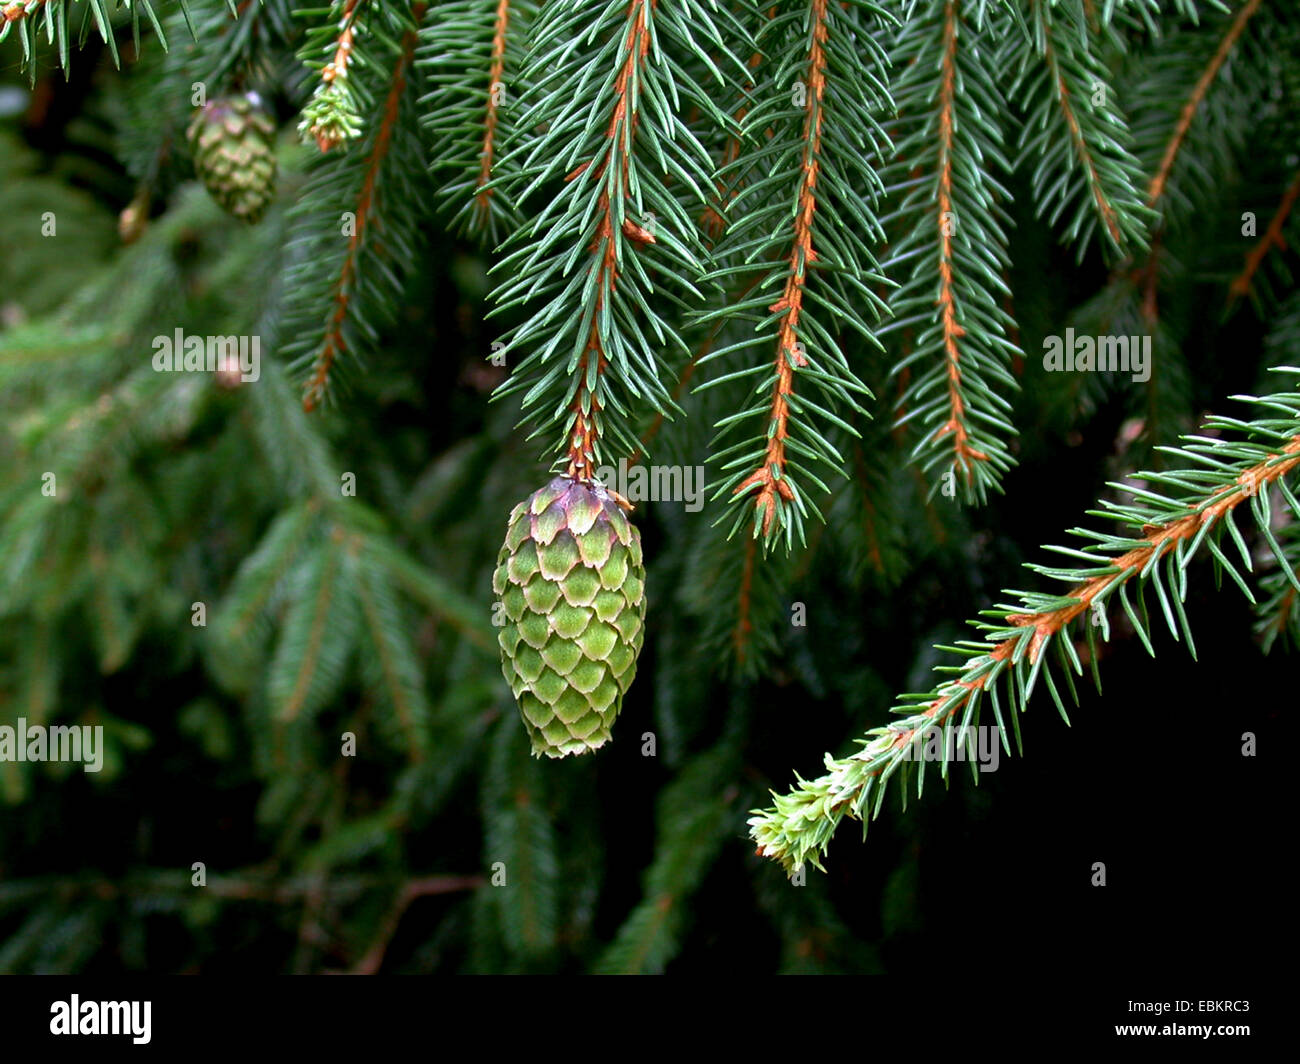 Norway spruce (Picea abies 'Acrocona', Picea abies Acrocona), branch with cone of cultivar Acrocona Stock Photo